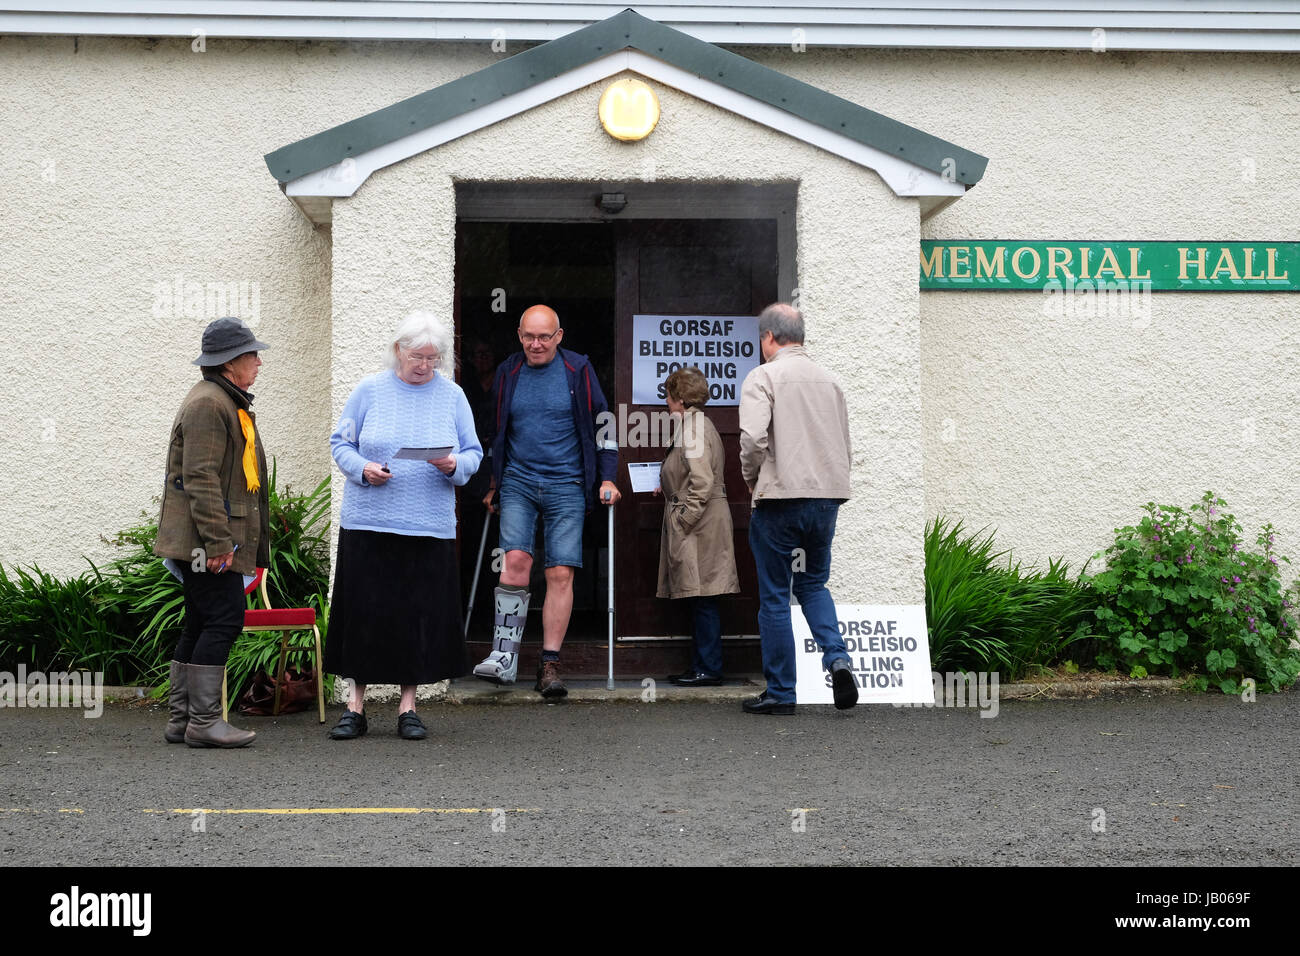 Presteigne, Powys, Wales, UK - Jeudi 8 Juin 2017 - Les électeurs arrivent dans la pluie et bruine d'exercer leur droit de vote dans l'élection générale britannique Steven - mai/Alamy Live News Banque D'Images